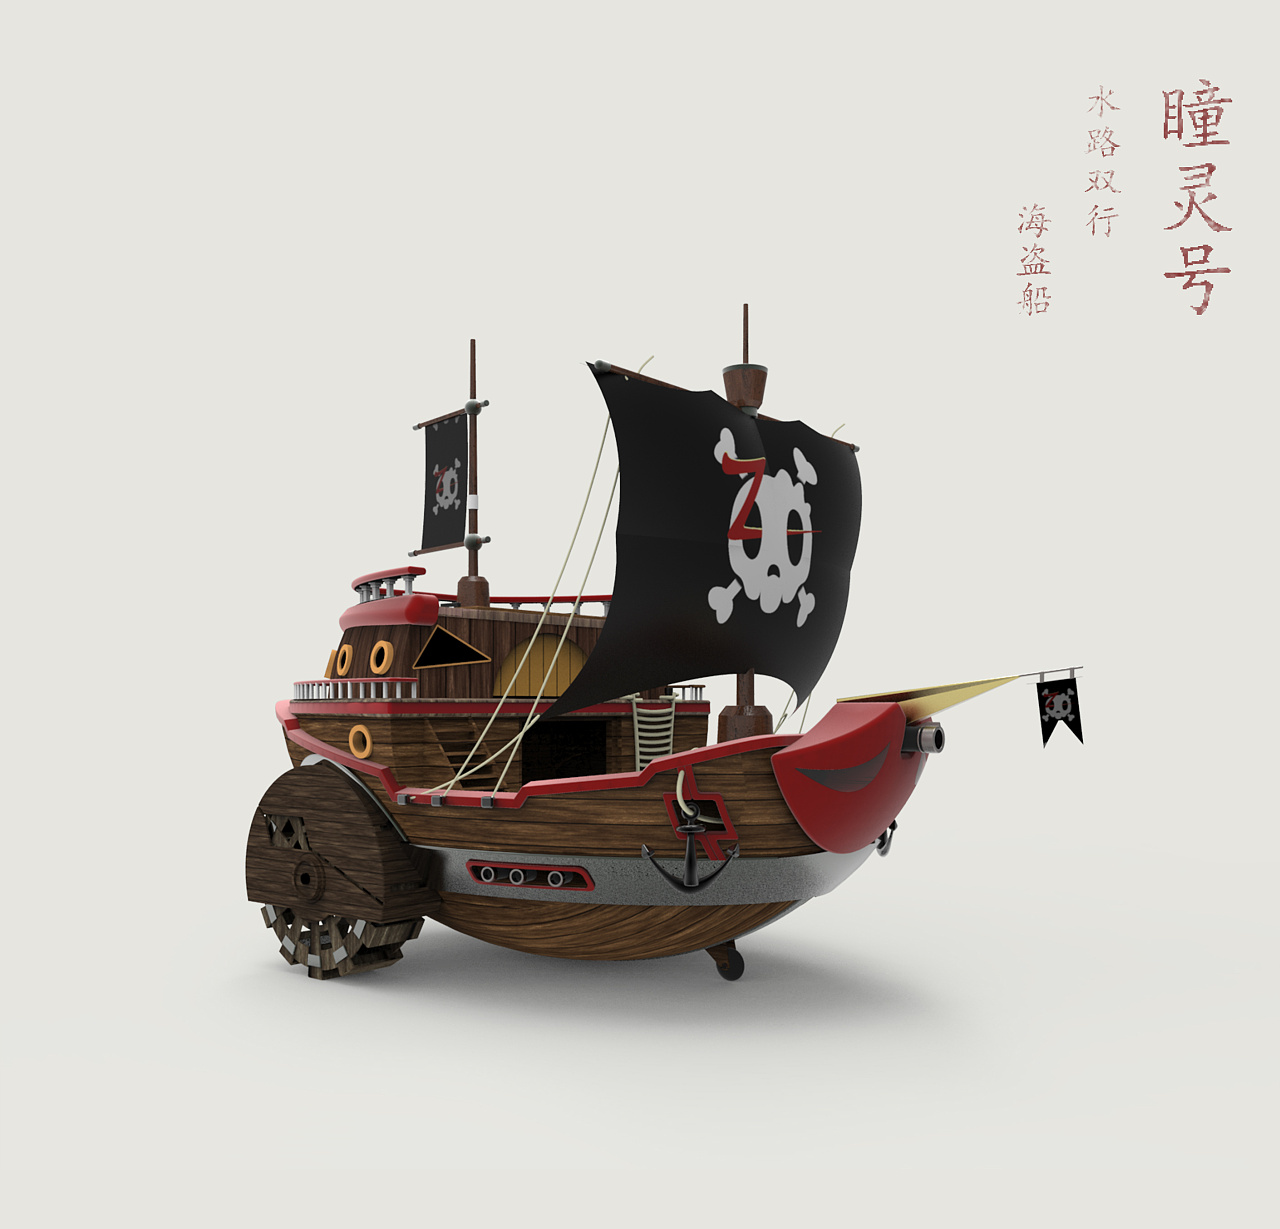 加勒比海盗舰船设计之传说级主舰 由 土顽毛 创作 | leewiART 乐艺 建立你的个人艺术画廊，汇聚优秀的CG艺术作品